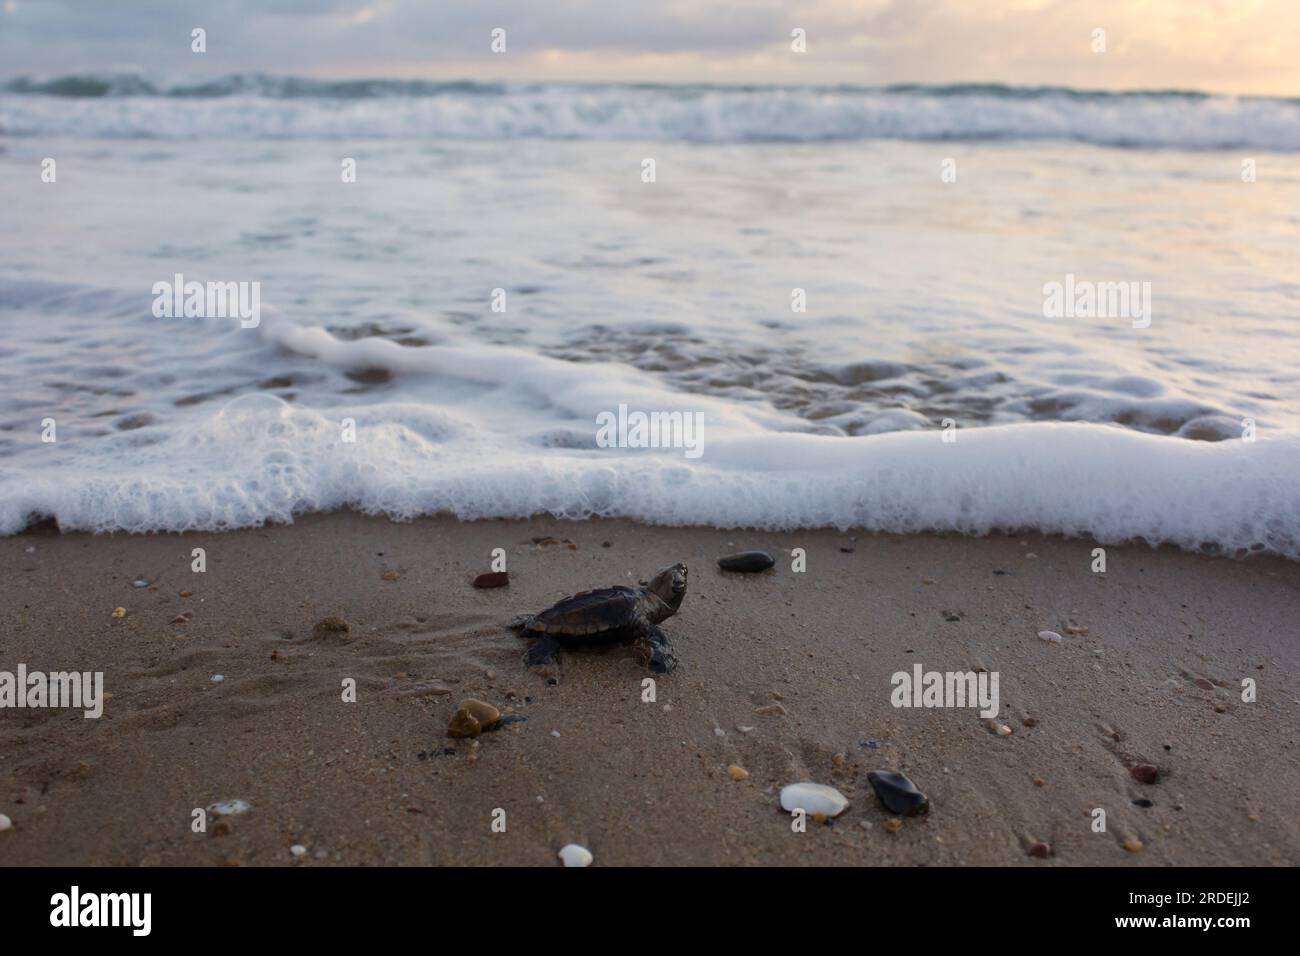 Una tortuga Loggerhead (Caretta caretta) que eclosionan mirando hacia el océano está a punto de entrar por primera vez. Mon Repos Beach Queensland Australia Foto de stock